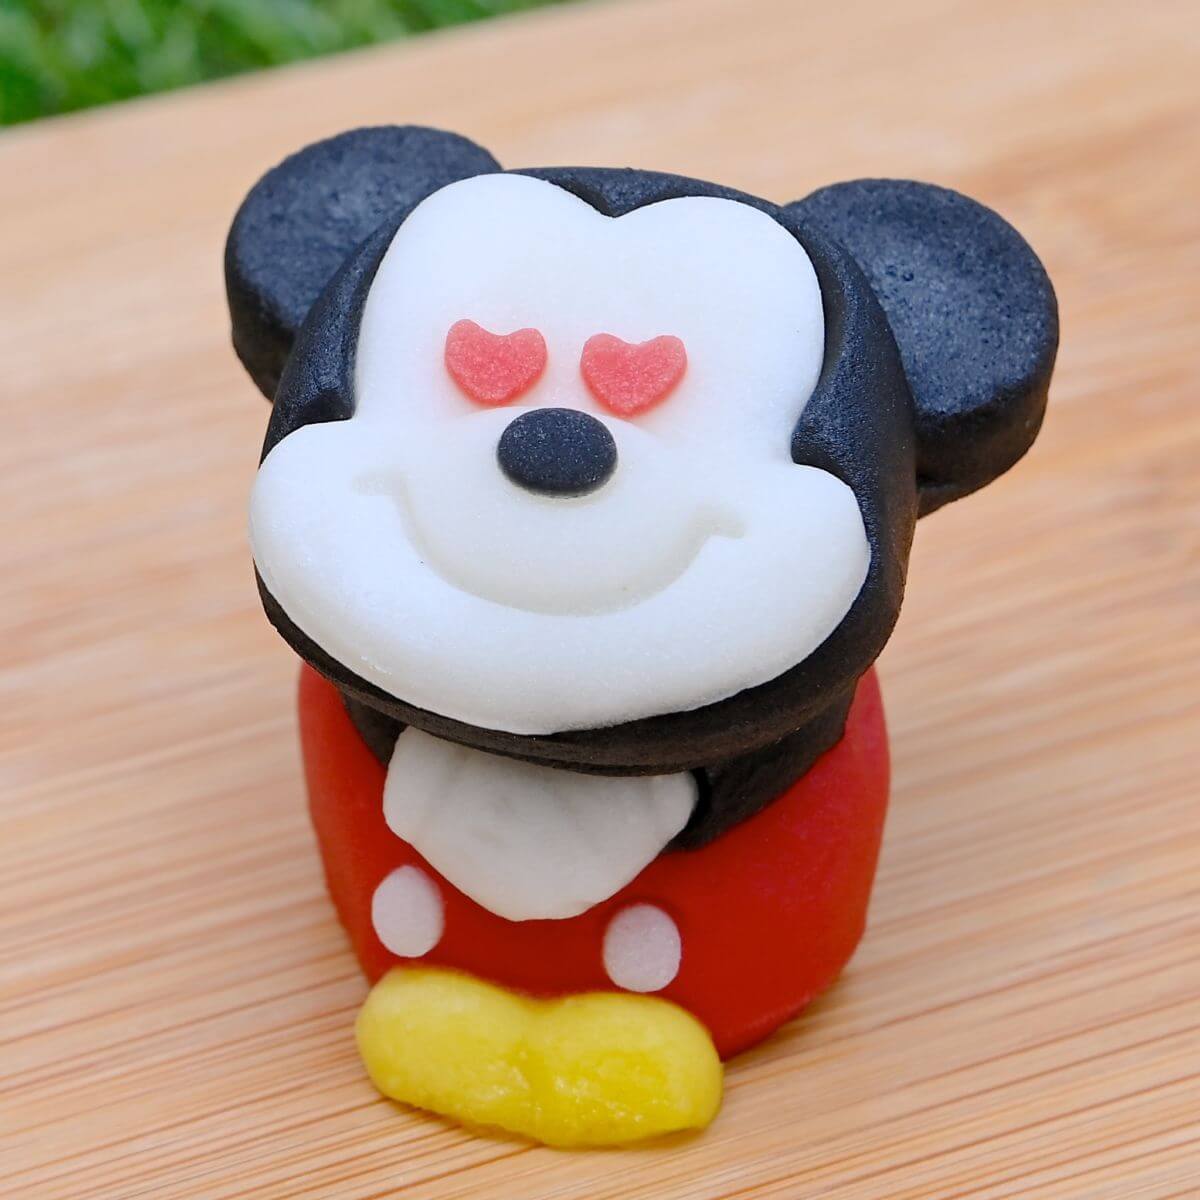 「食べマス Disney(ディズニー)」ミッキーマウス